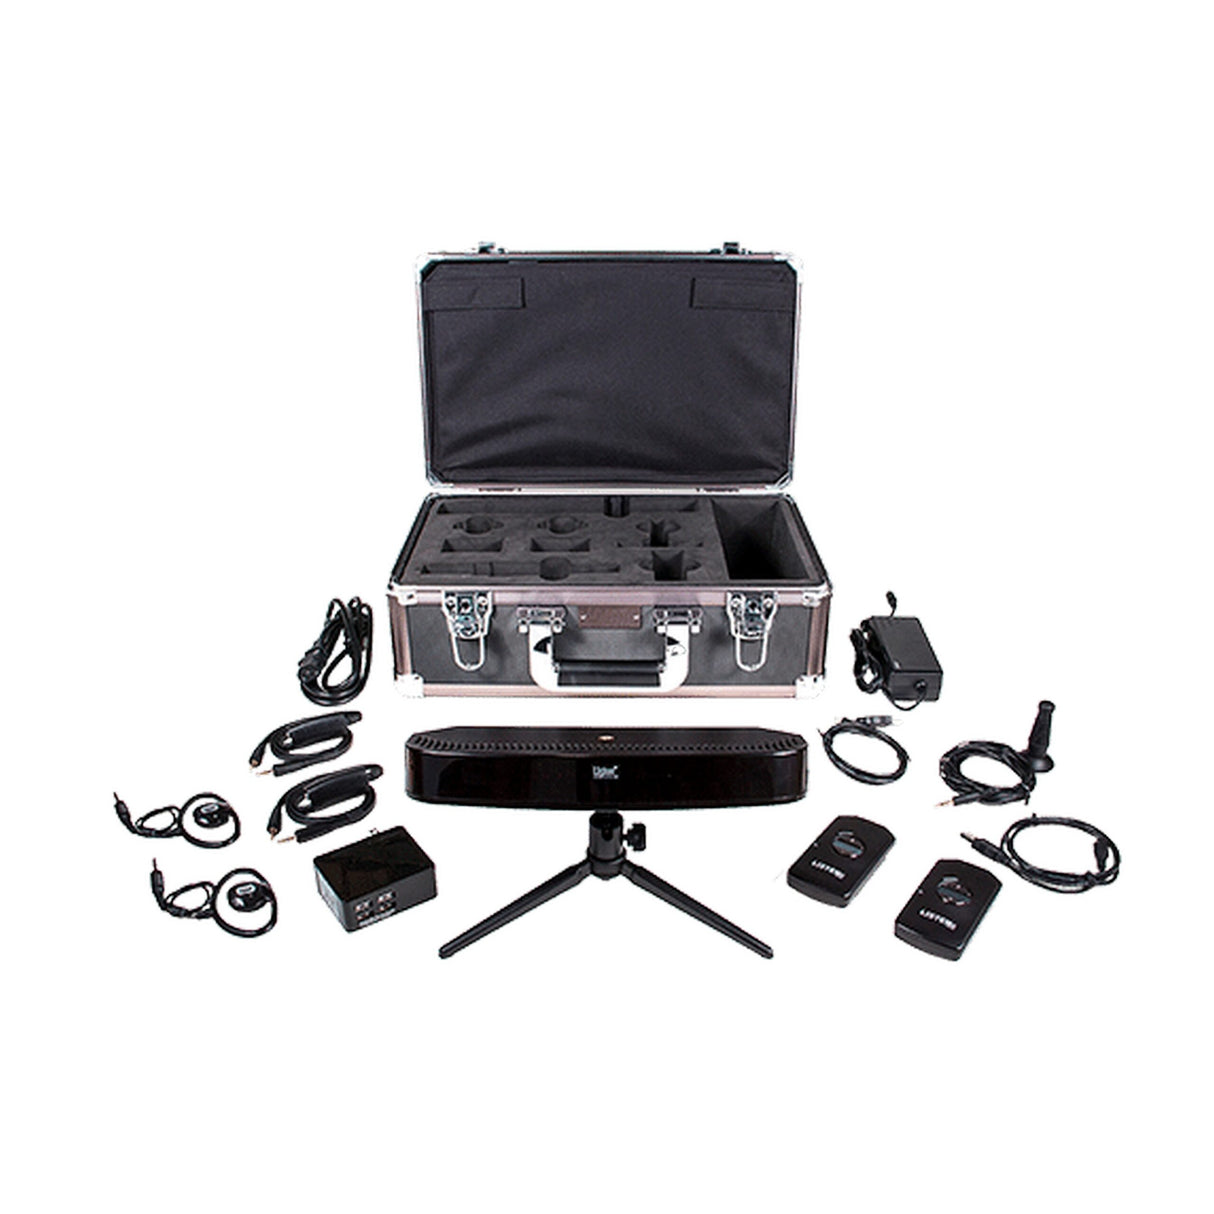 Listen Tech LS-88-01 Portable ListenIR iDSP System